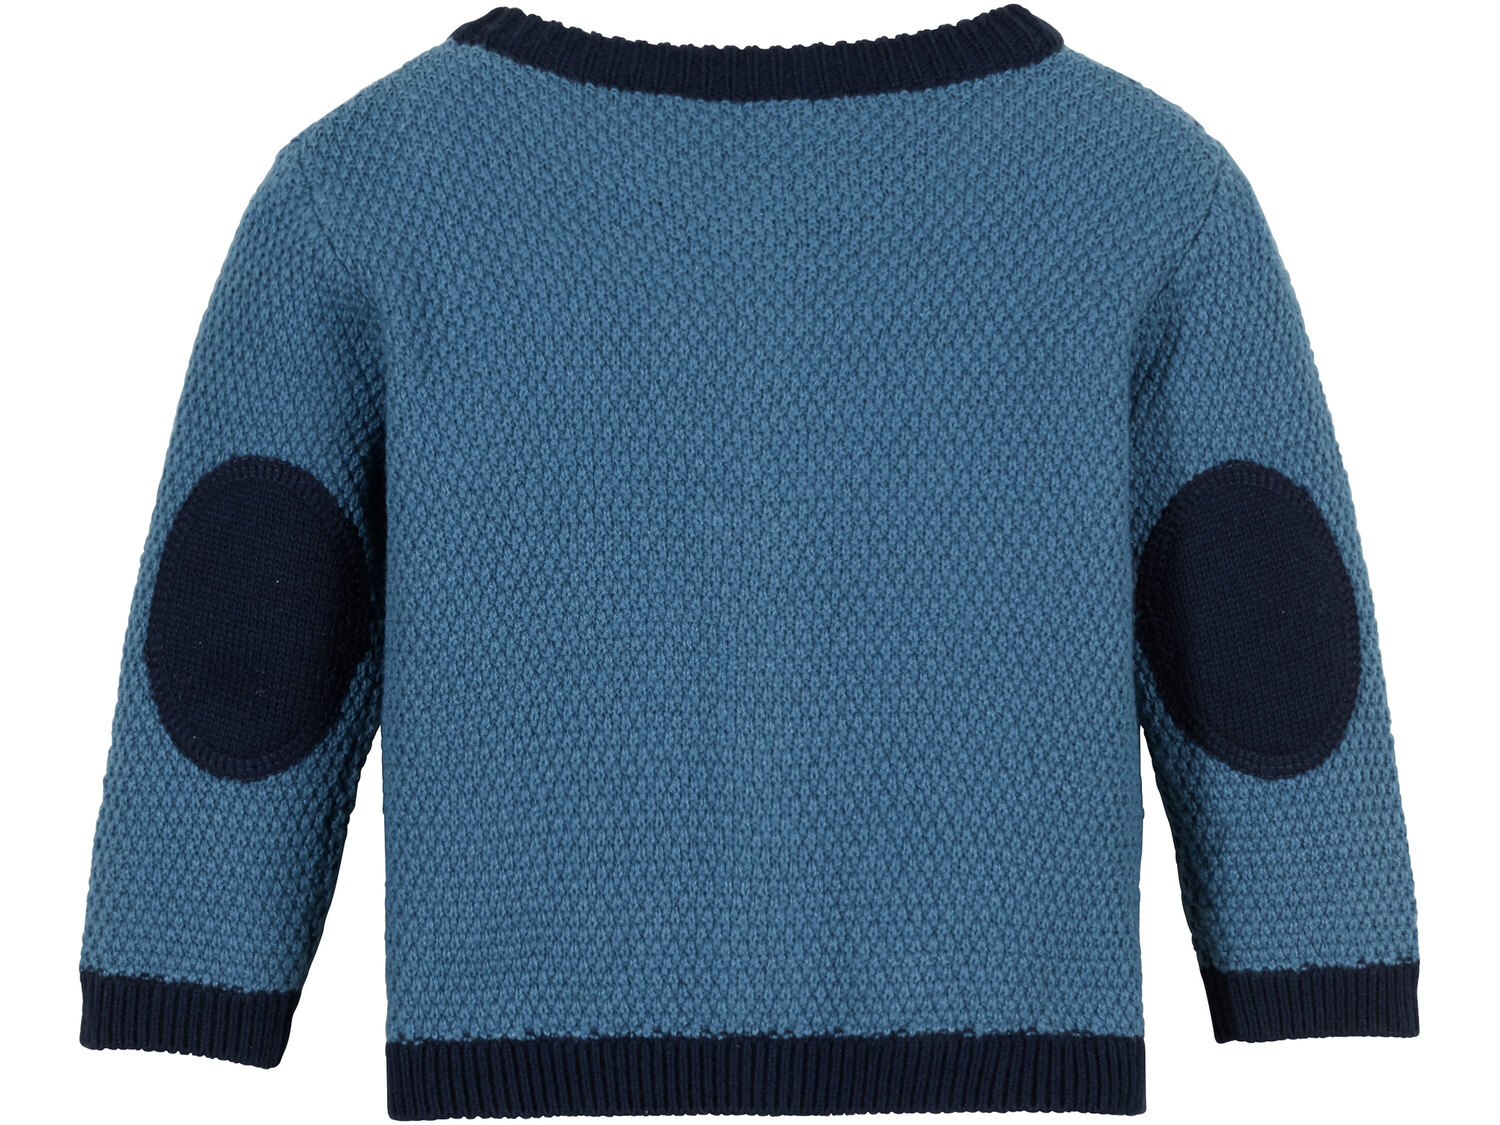 Sweterek z biobawełny Lupilu, cena 24,99 PLN 
- rozmiary: 62-92
- miękki i przyjemny
- ...